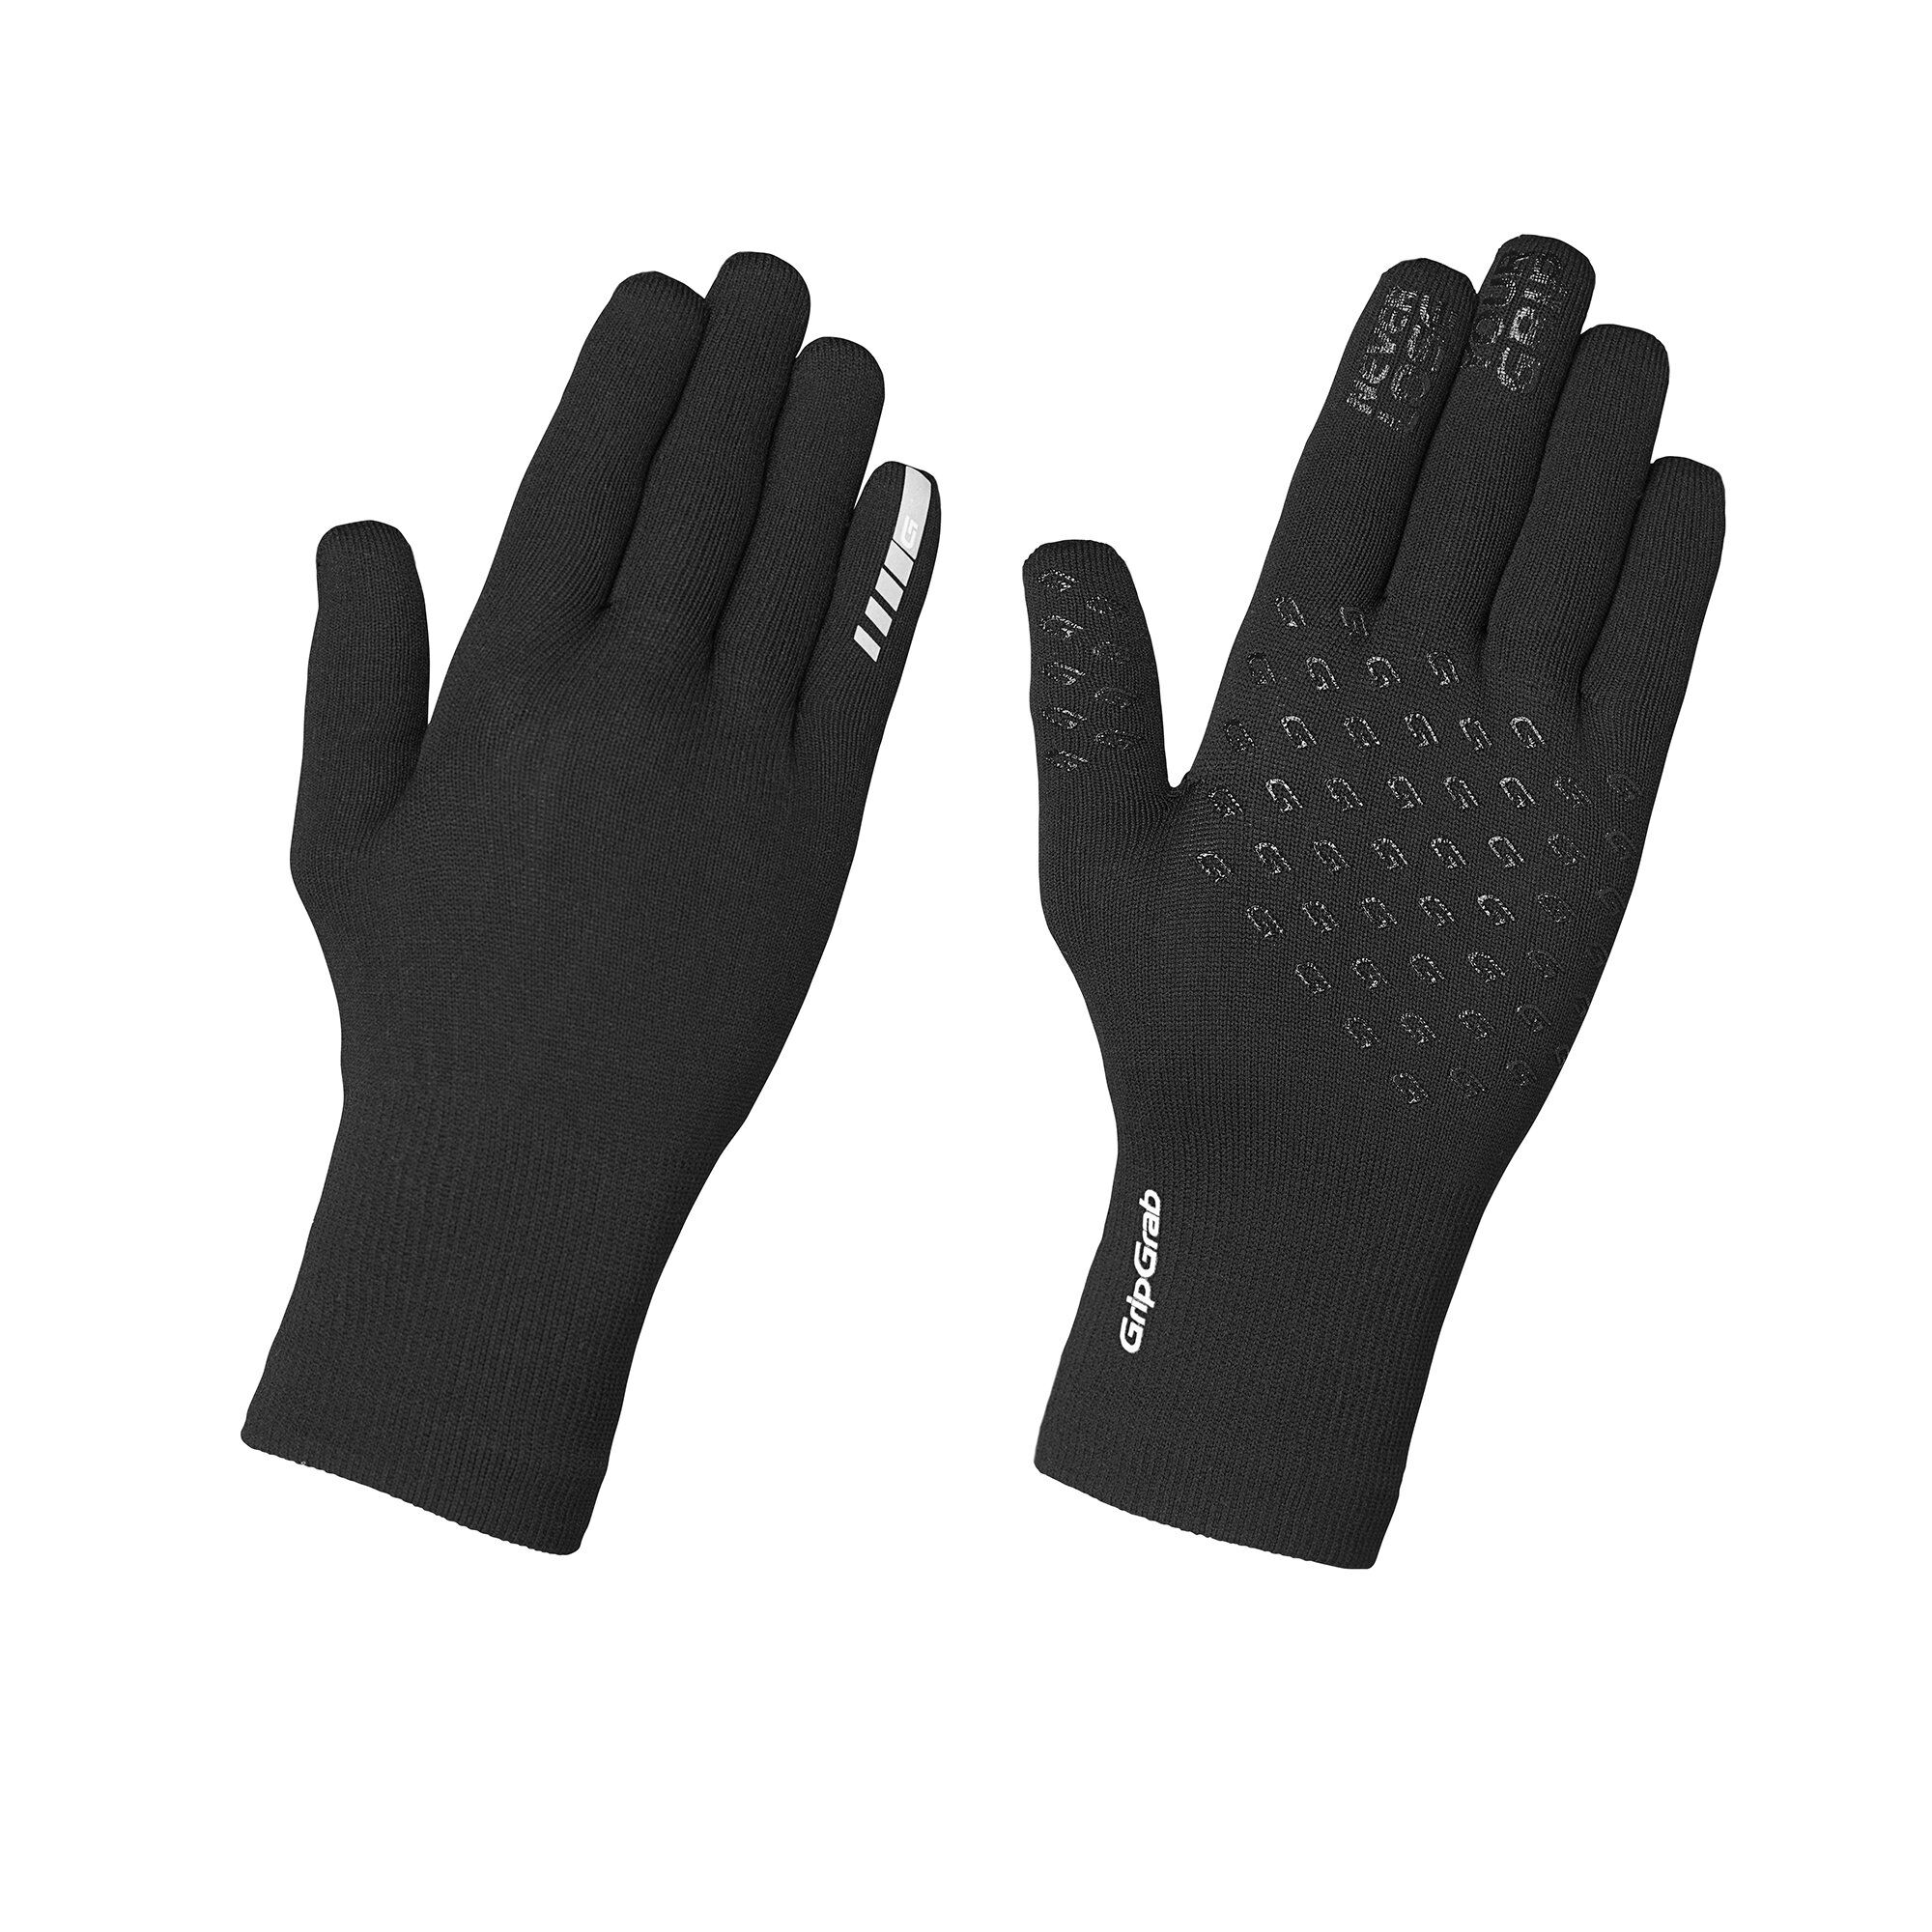 Grip Grab Waterproof Knitted Thermal Glove - Cykelhandsker